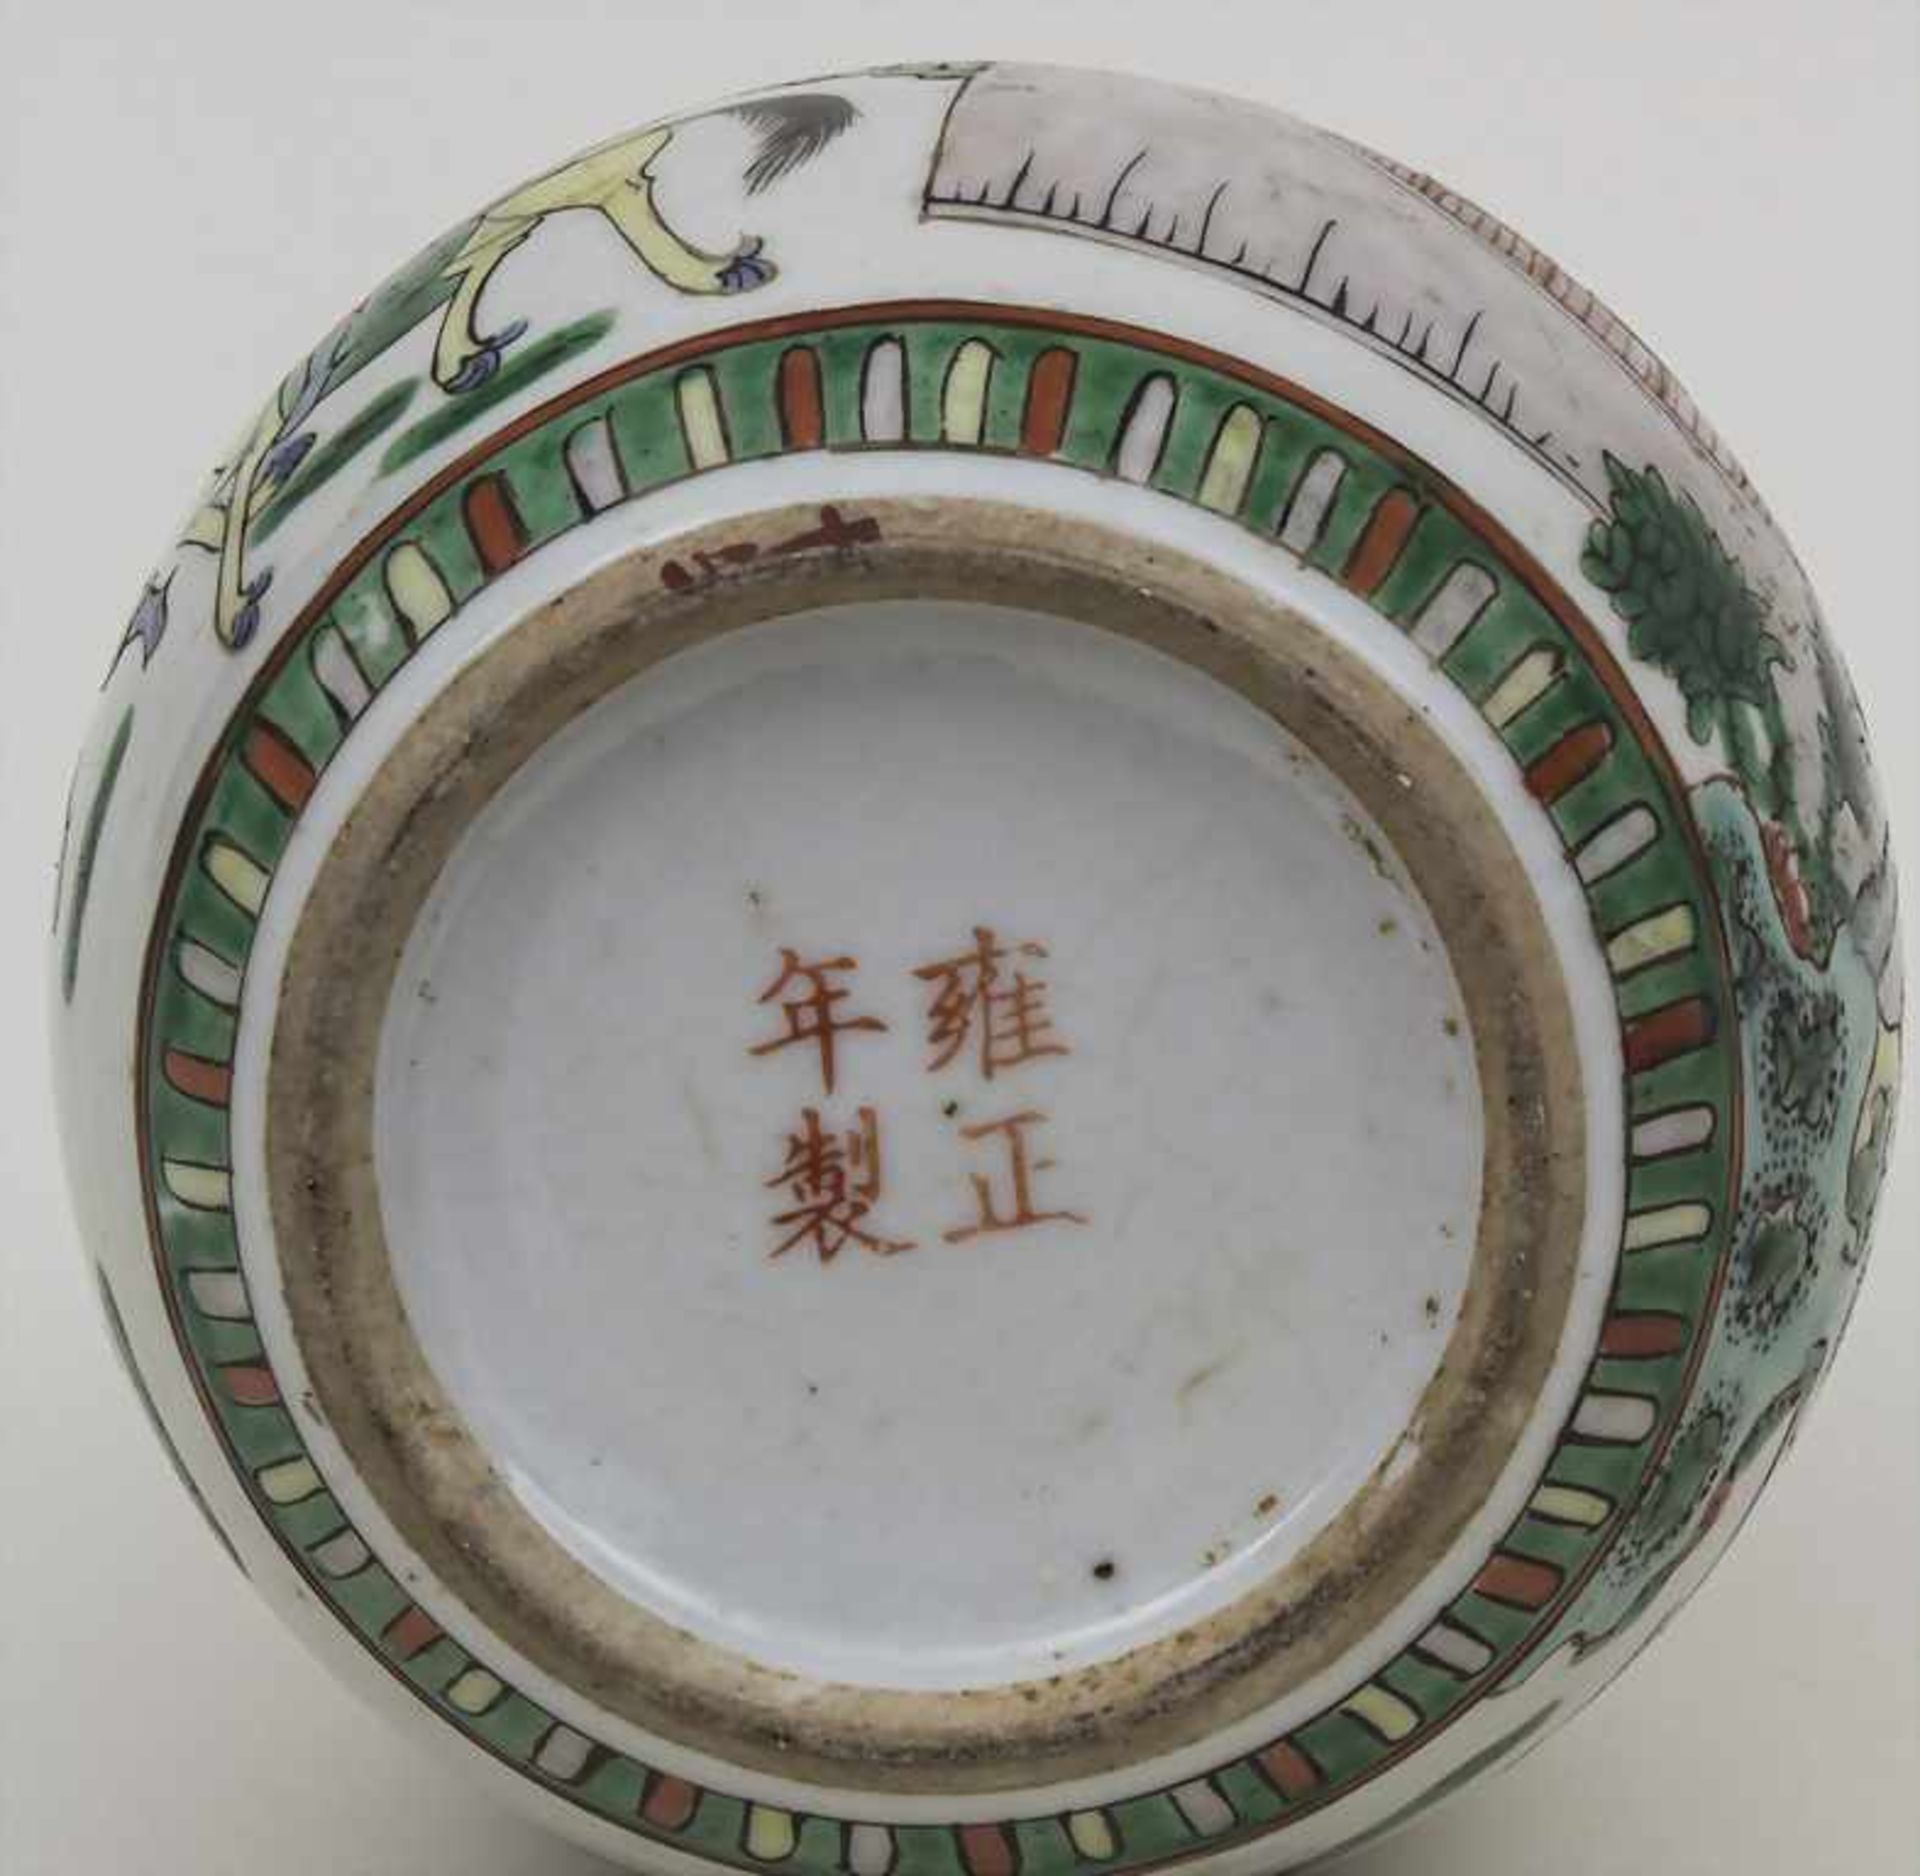 Kleiner Schulter-Ingwer-Topf / A small shoulder-ginger pot, China, um 1900 Material: Porzellan, - Bild 3 aus 4